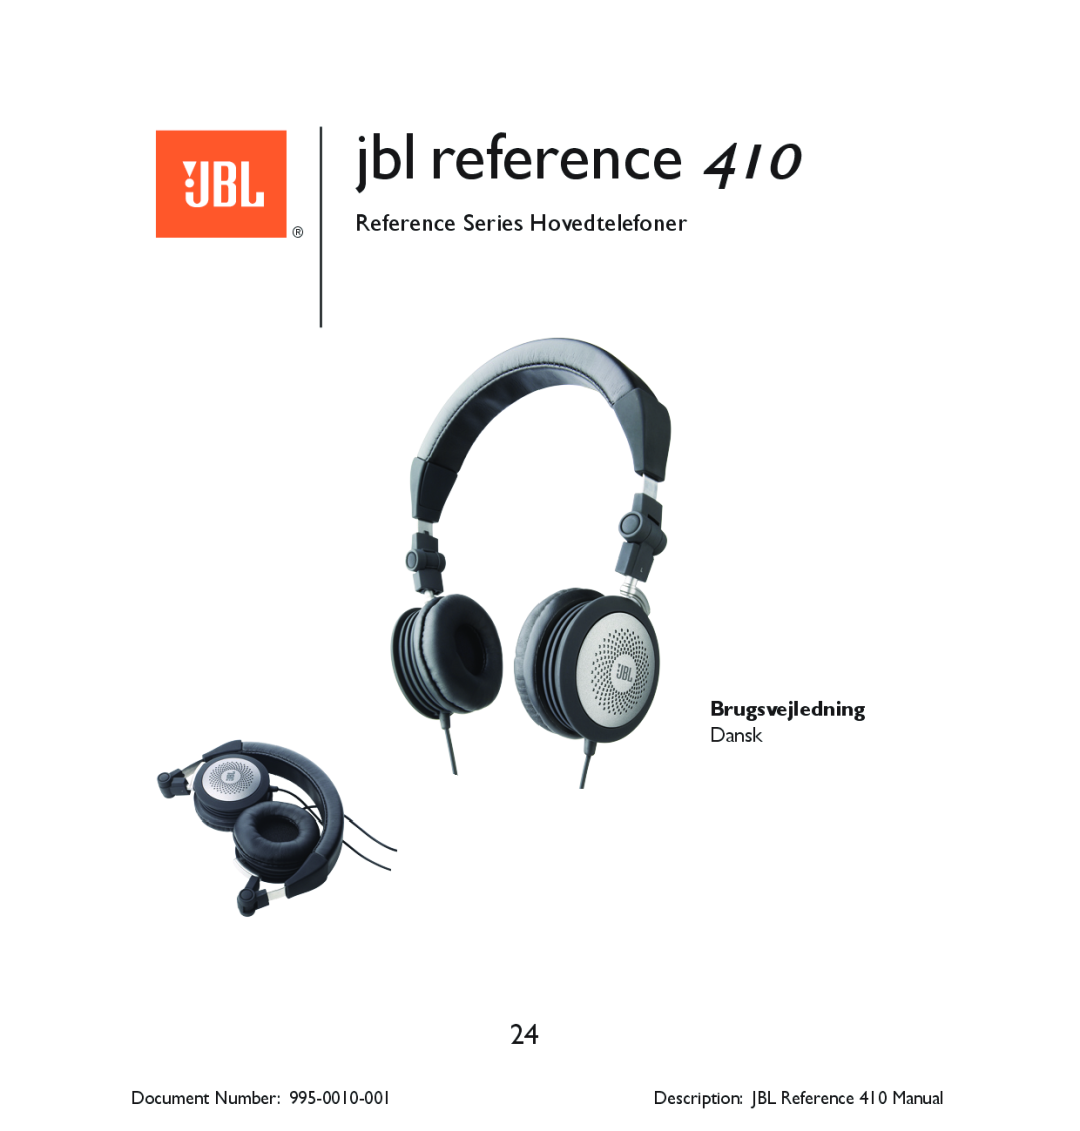 JBL 410 manual Reference Series Hovedtelefoner, Brugsvejledning, jbl reference, Document Number 